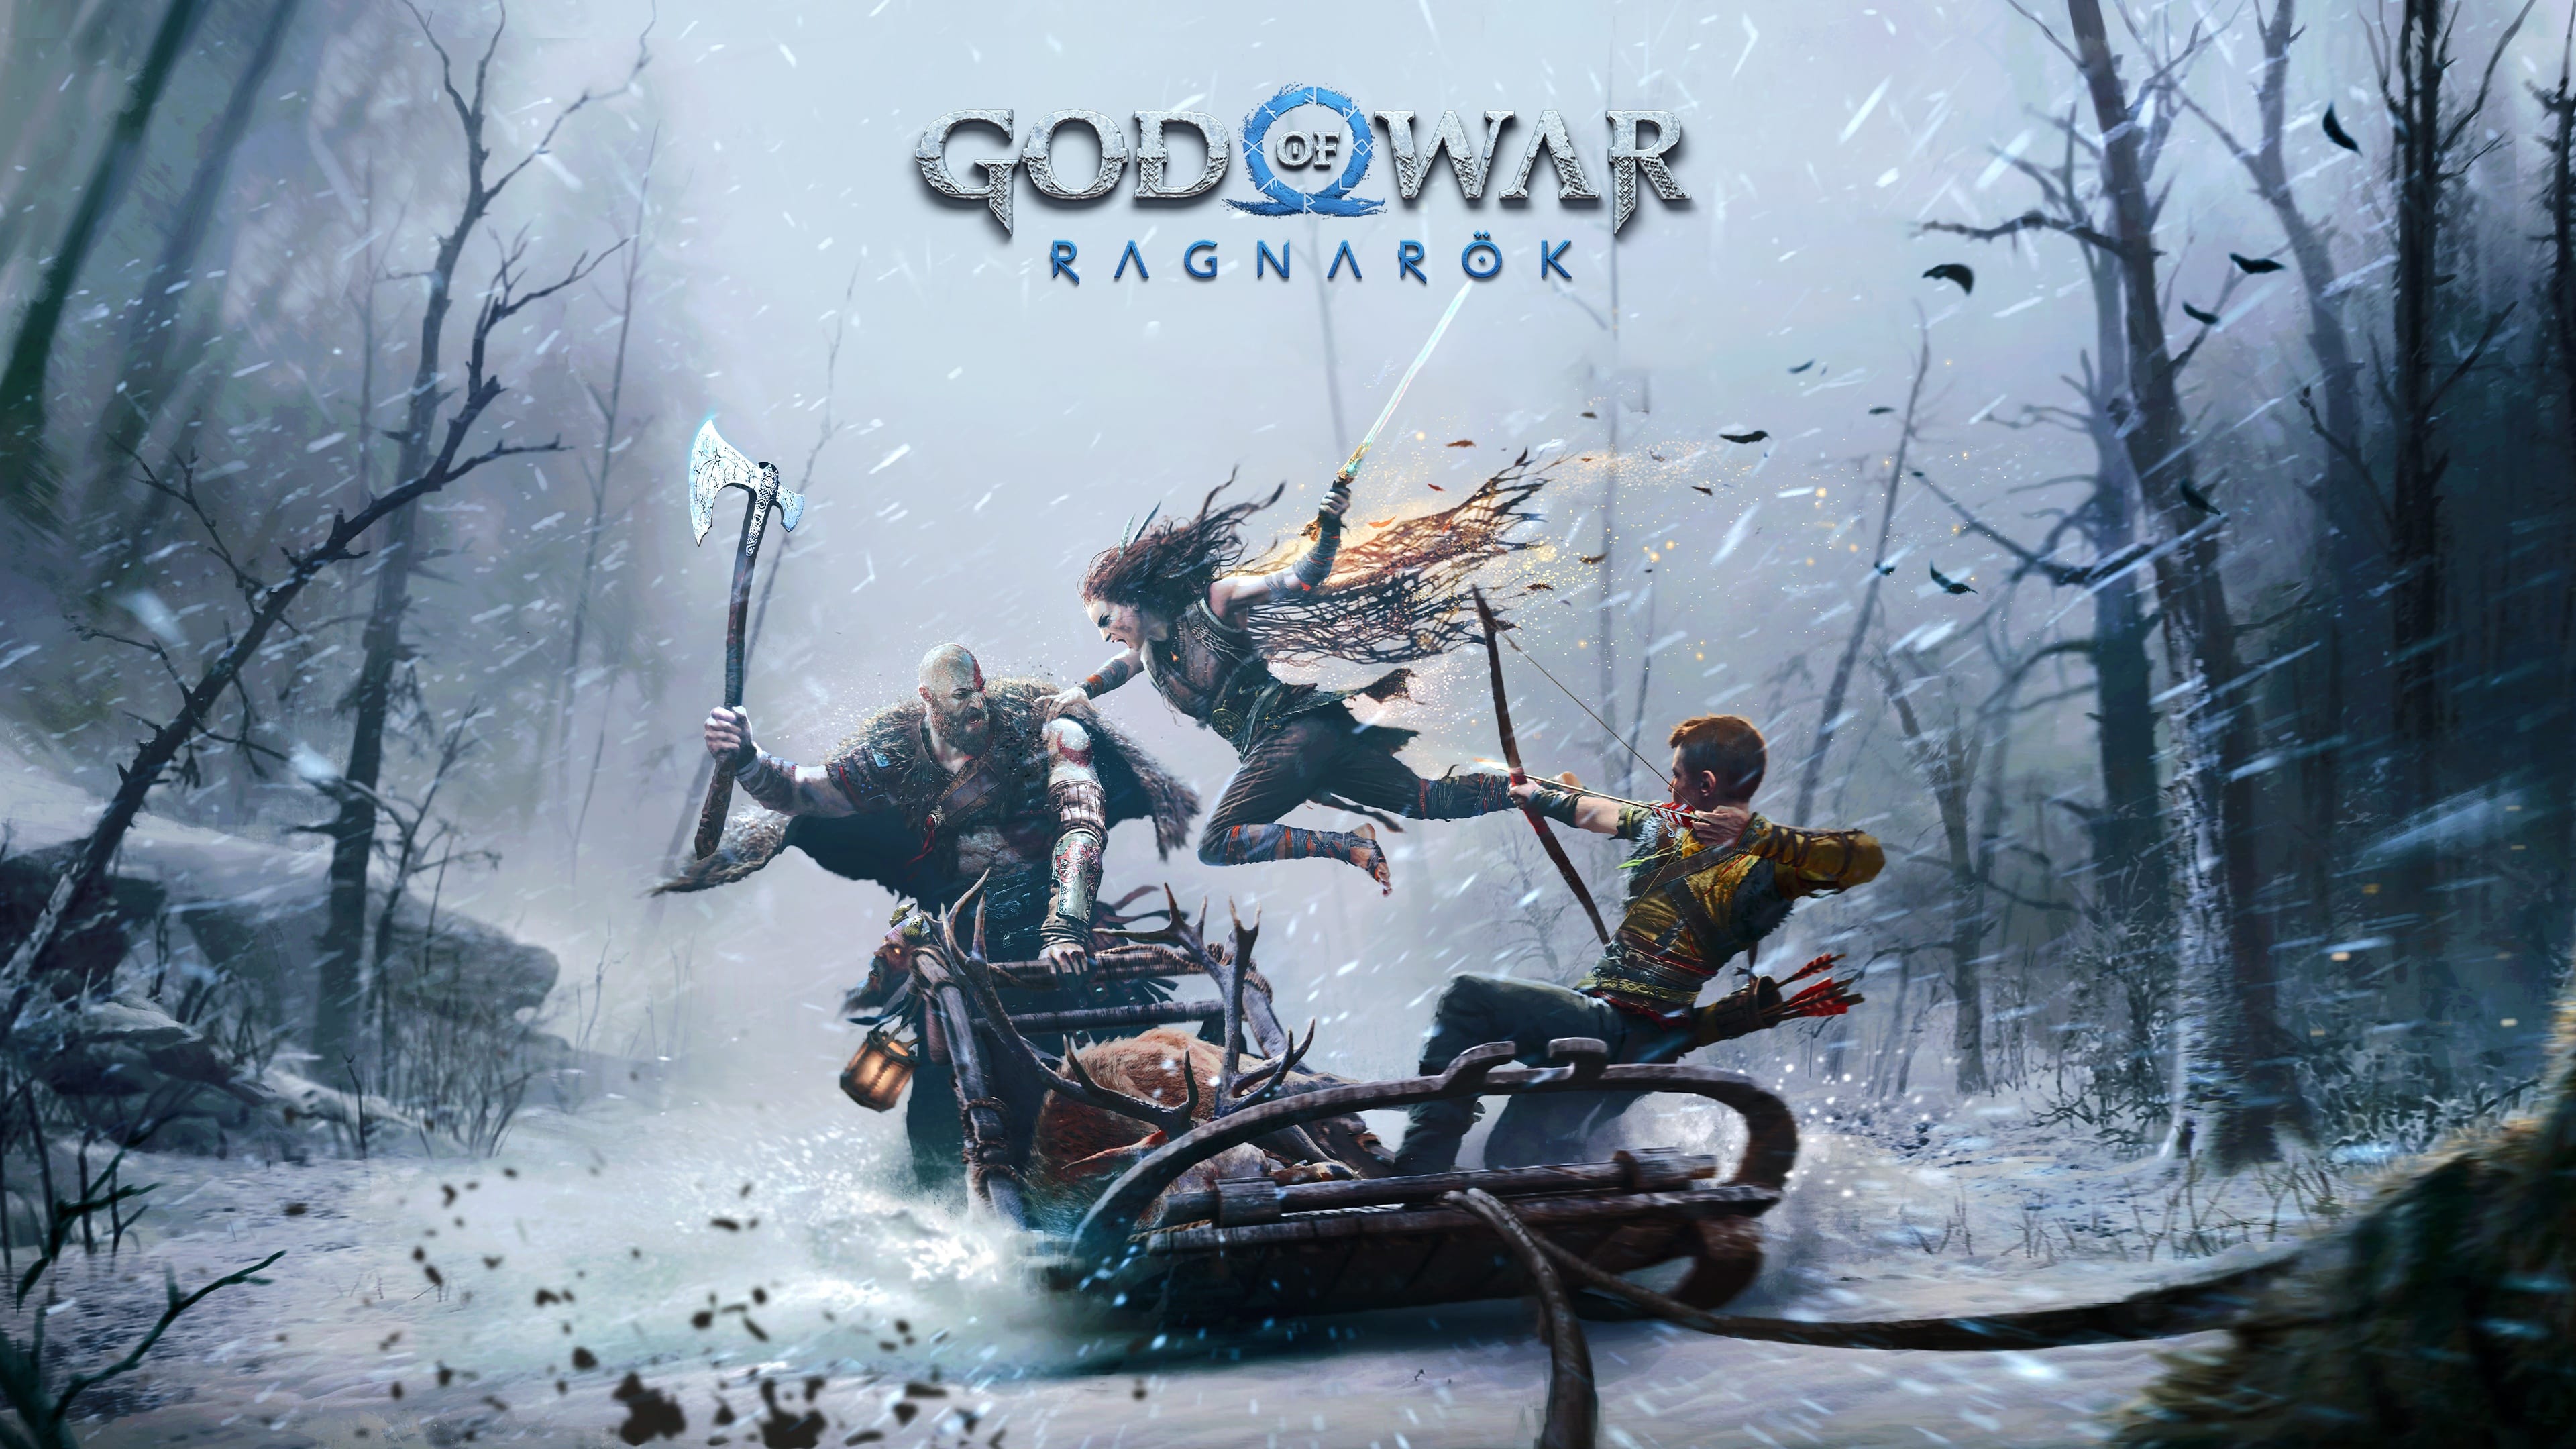 God of War Wagnarok Wallpaper